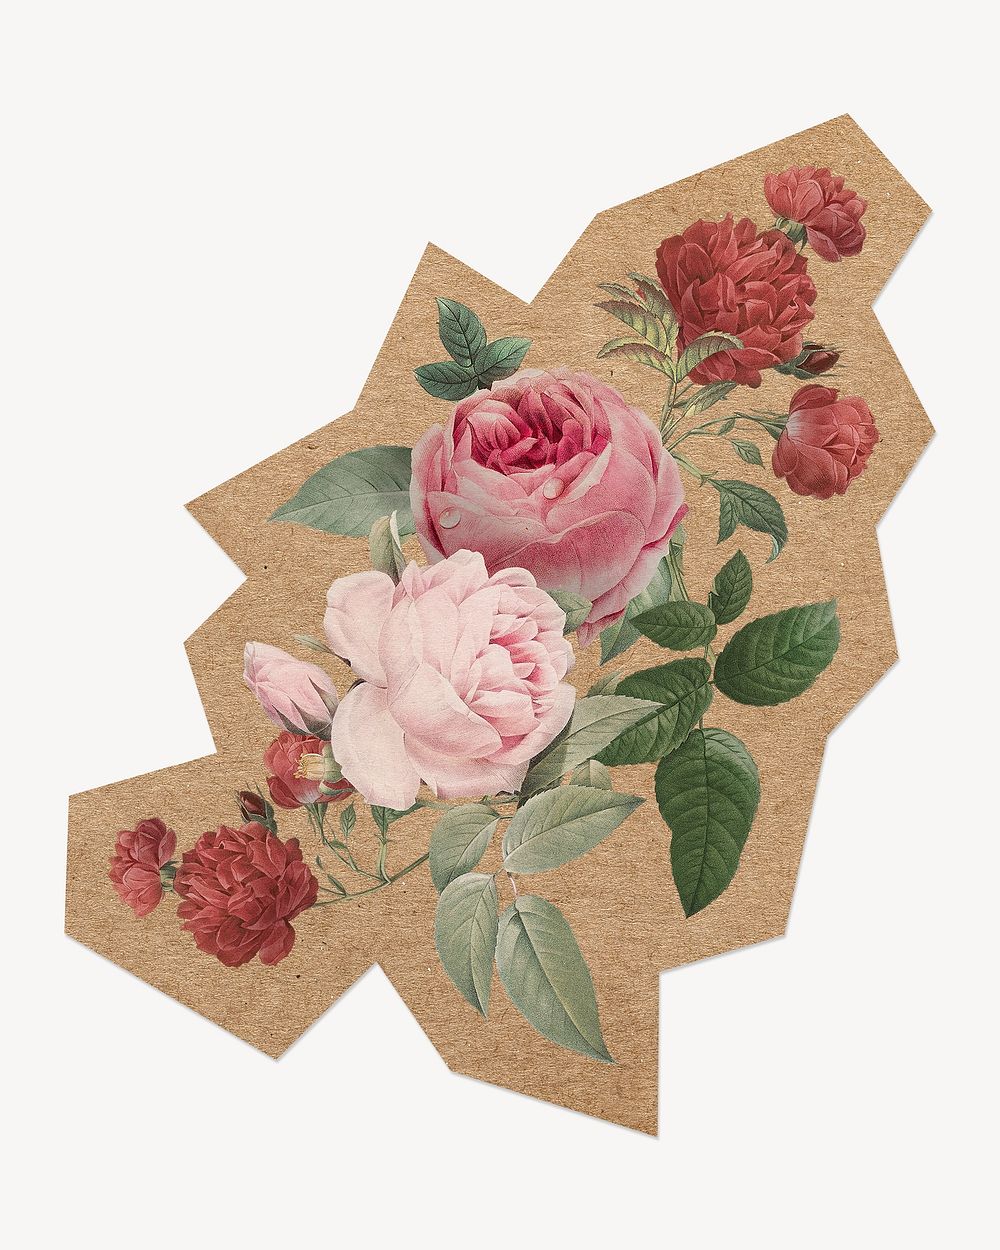 Vintage rose illustration, cut out paper element